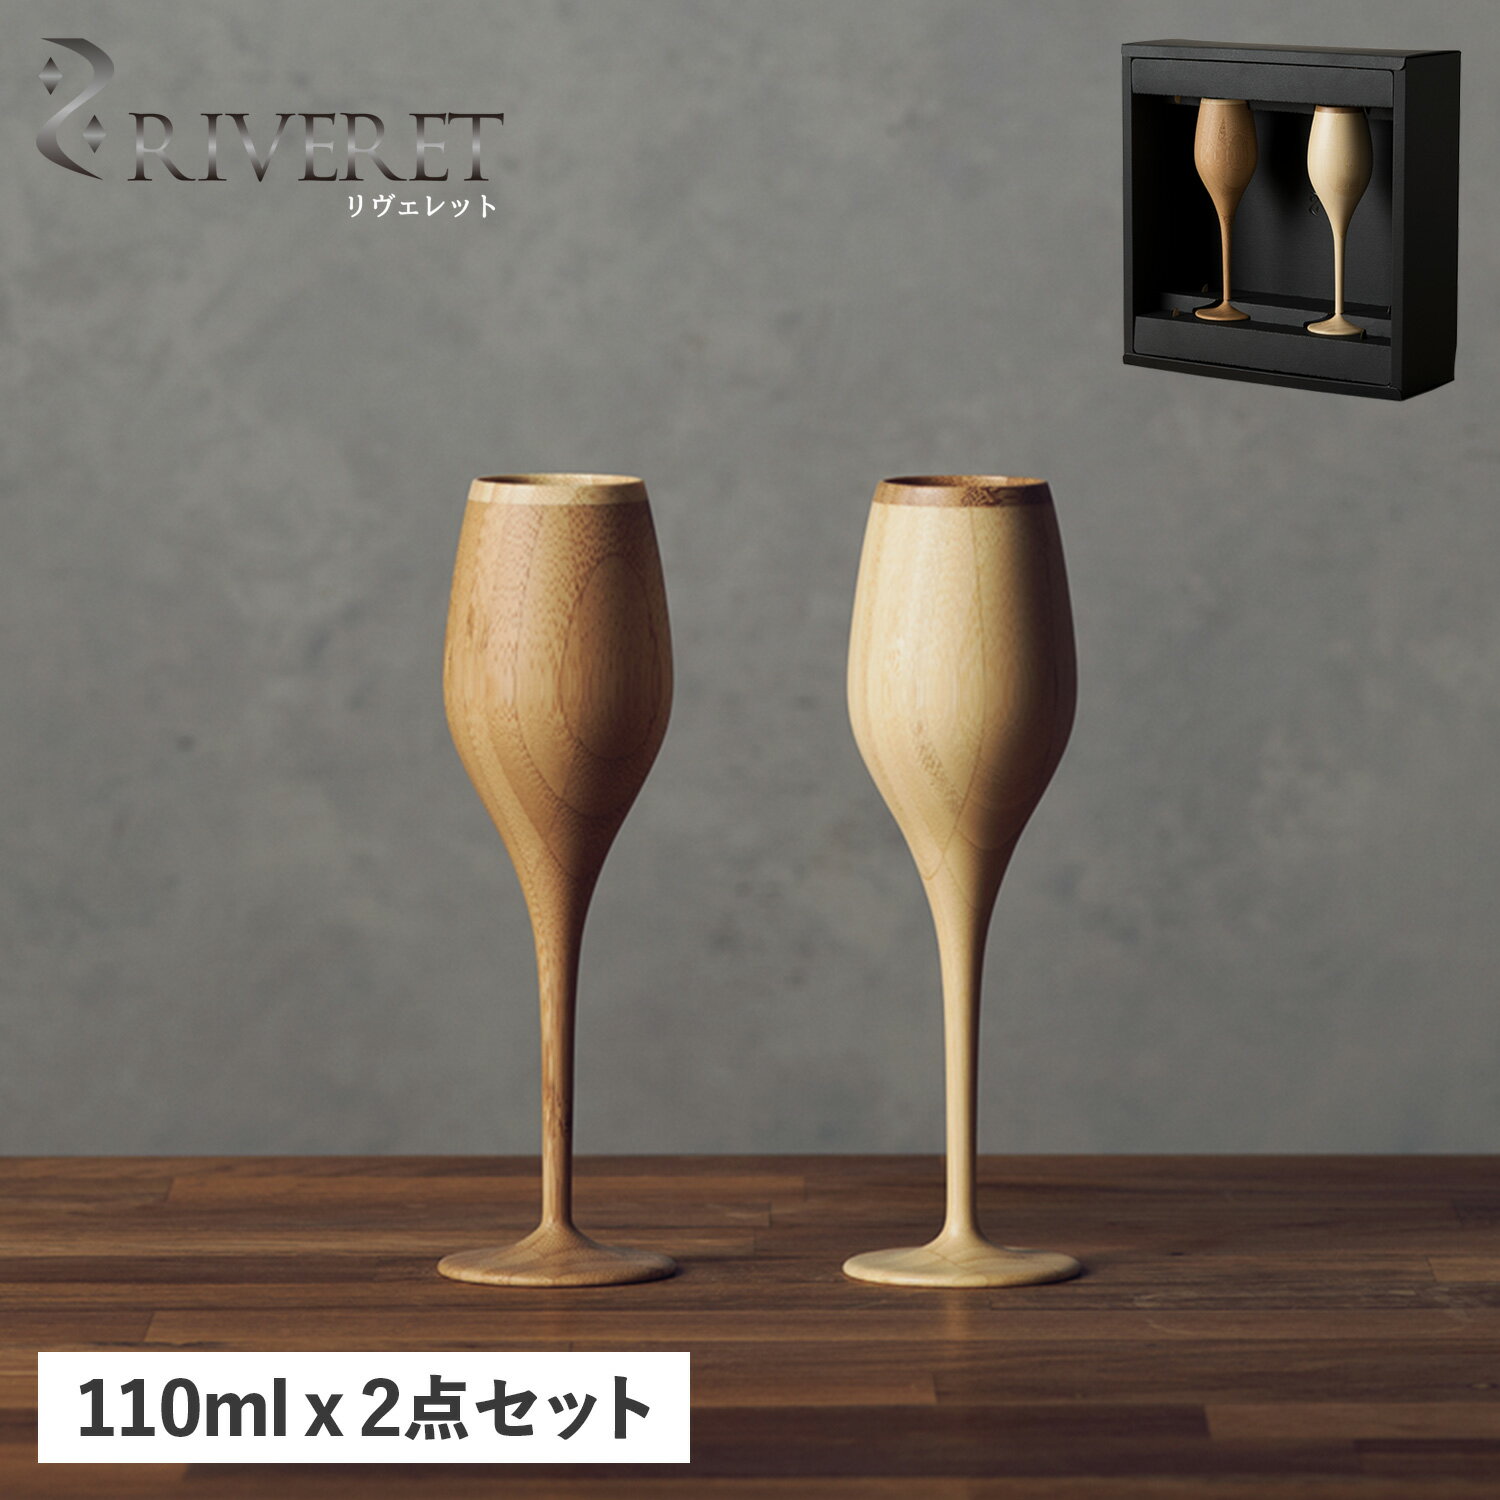 リヴェレット RIVERET グラス シャンパングラス 2点セット ブルジョン 天然素材 日本製 軽量 食洗器対応 リベレット BOURGEON PAIR RV-110WB 母の日